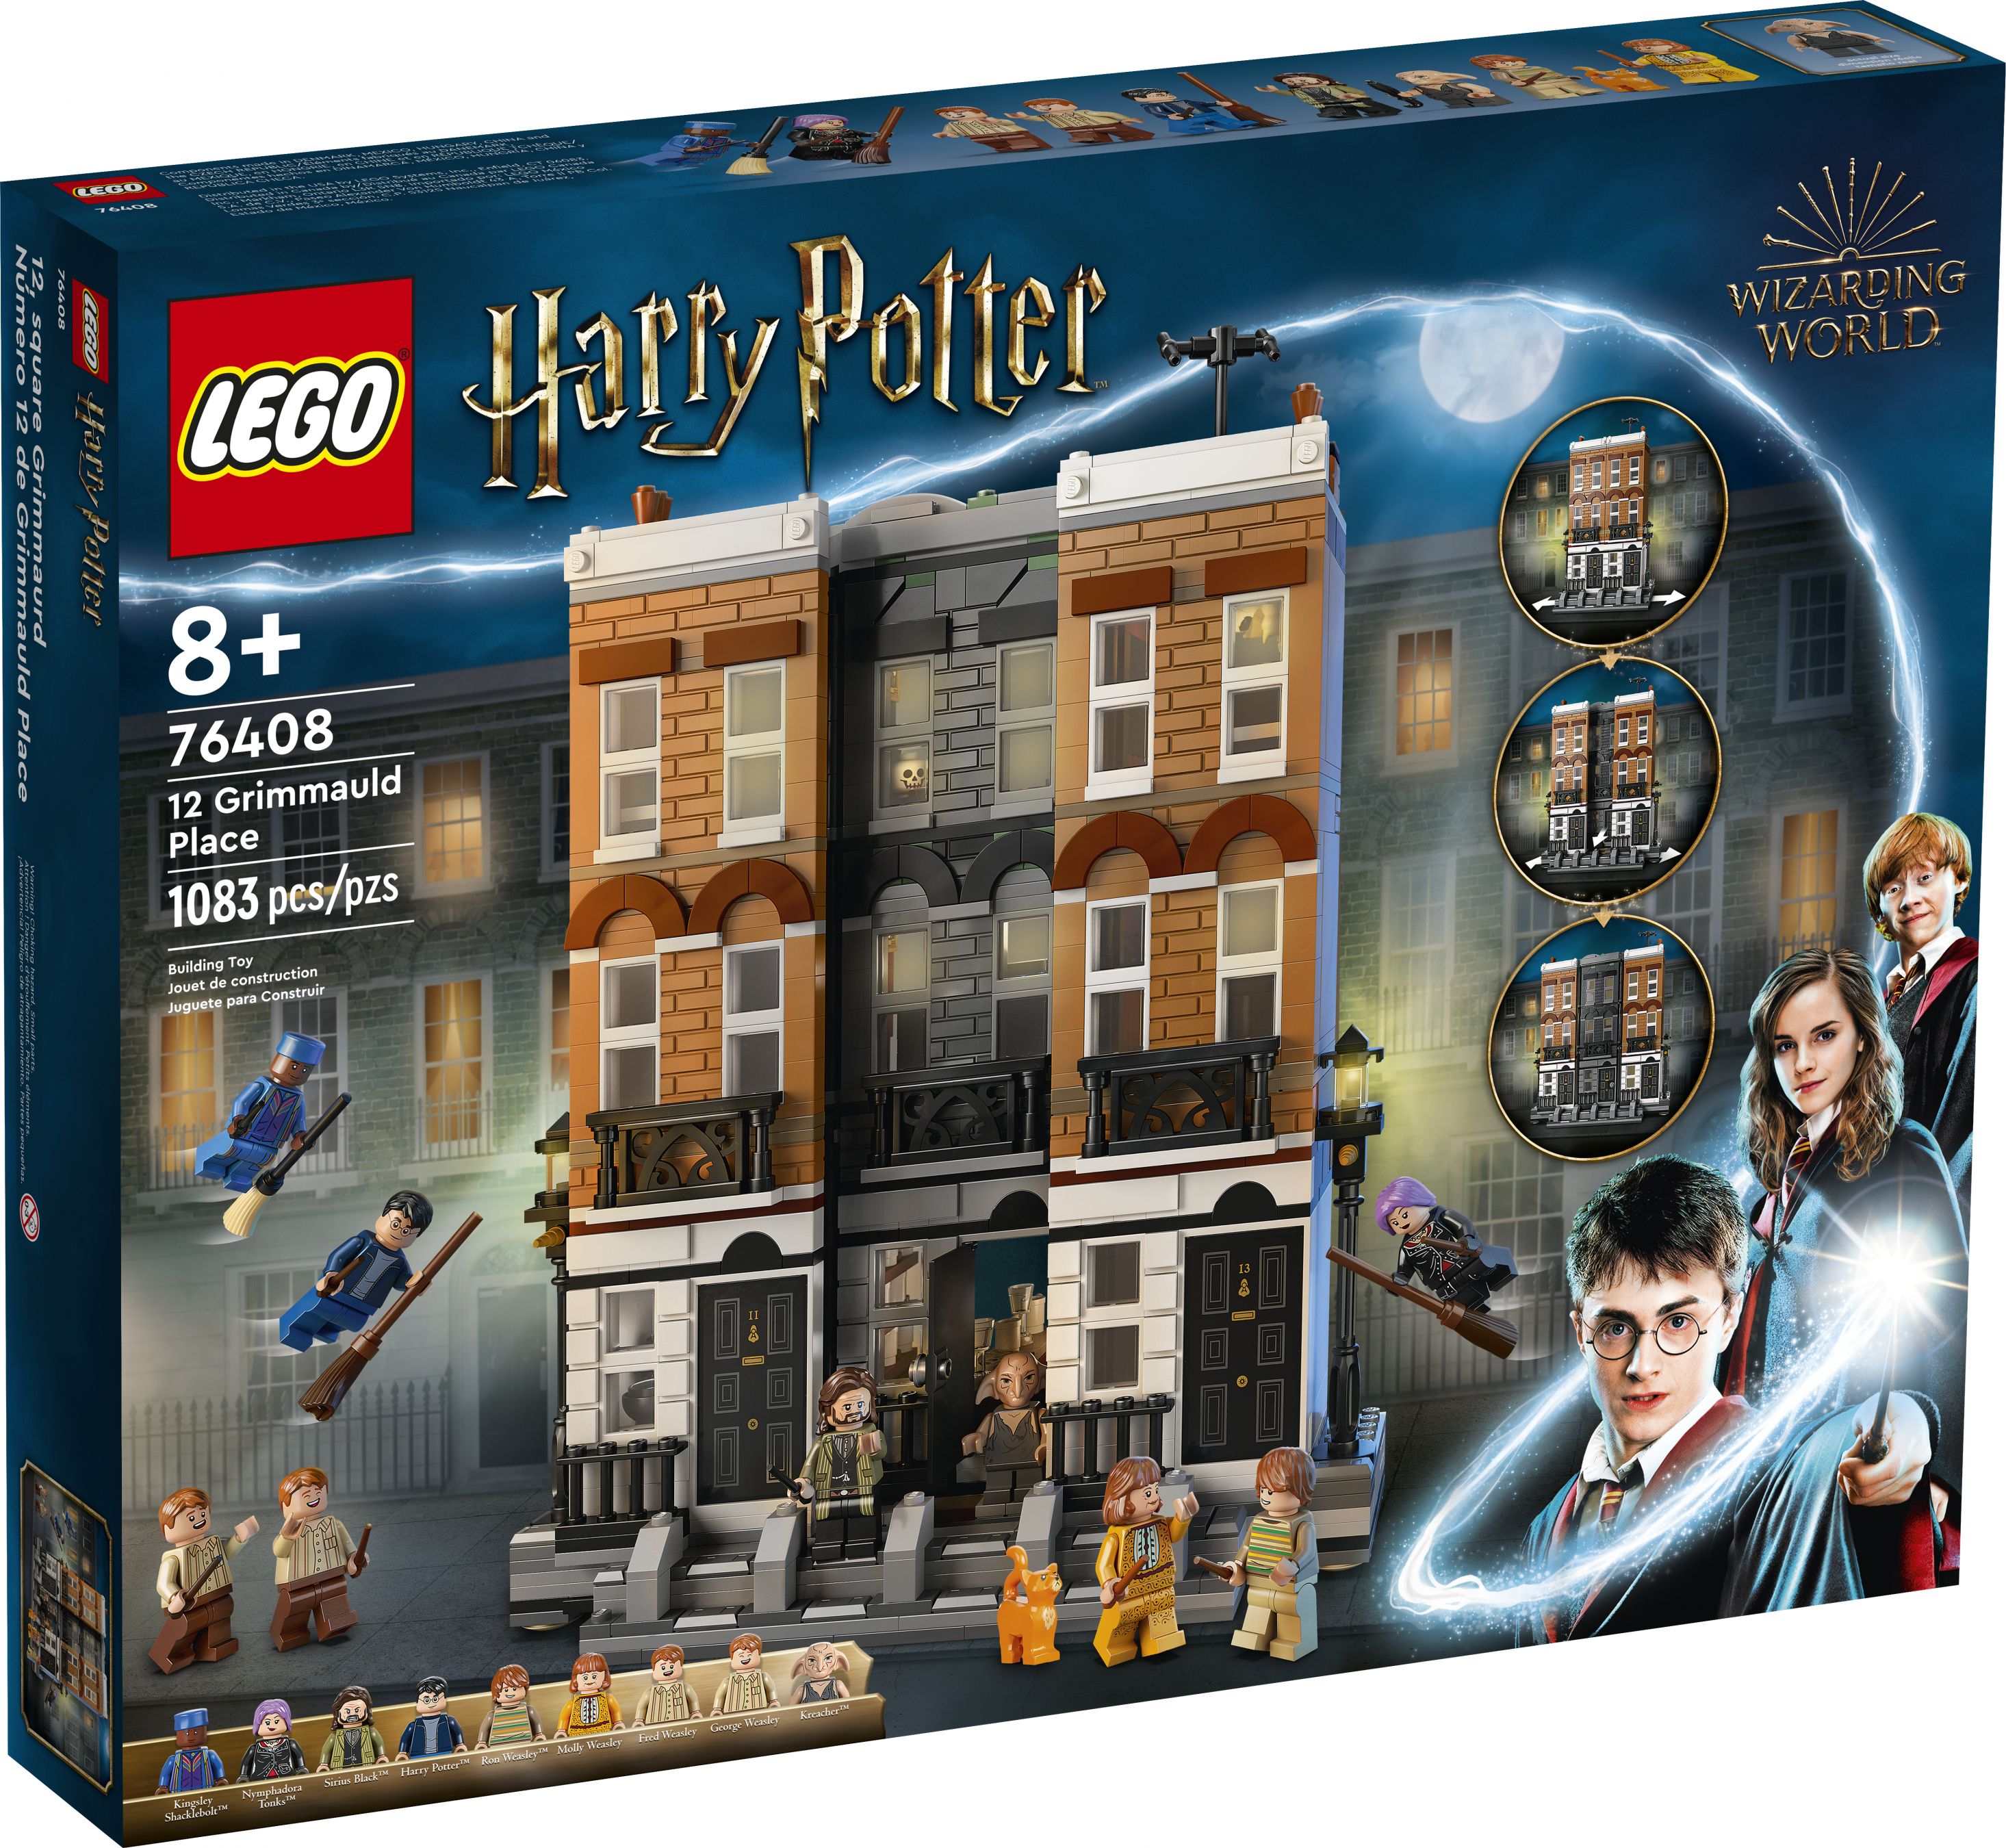 LEGO Harry Potter 76408 Grimmauldplatz Nr. 12 LEGO_76408_alt1.jpg